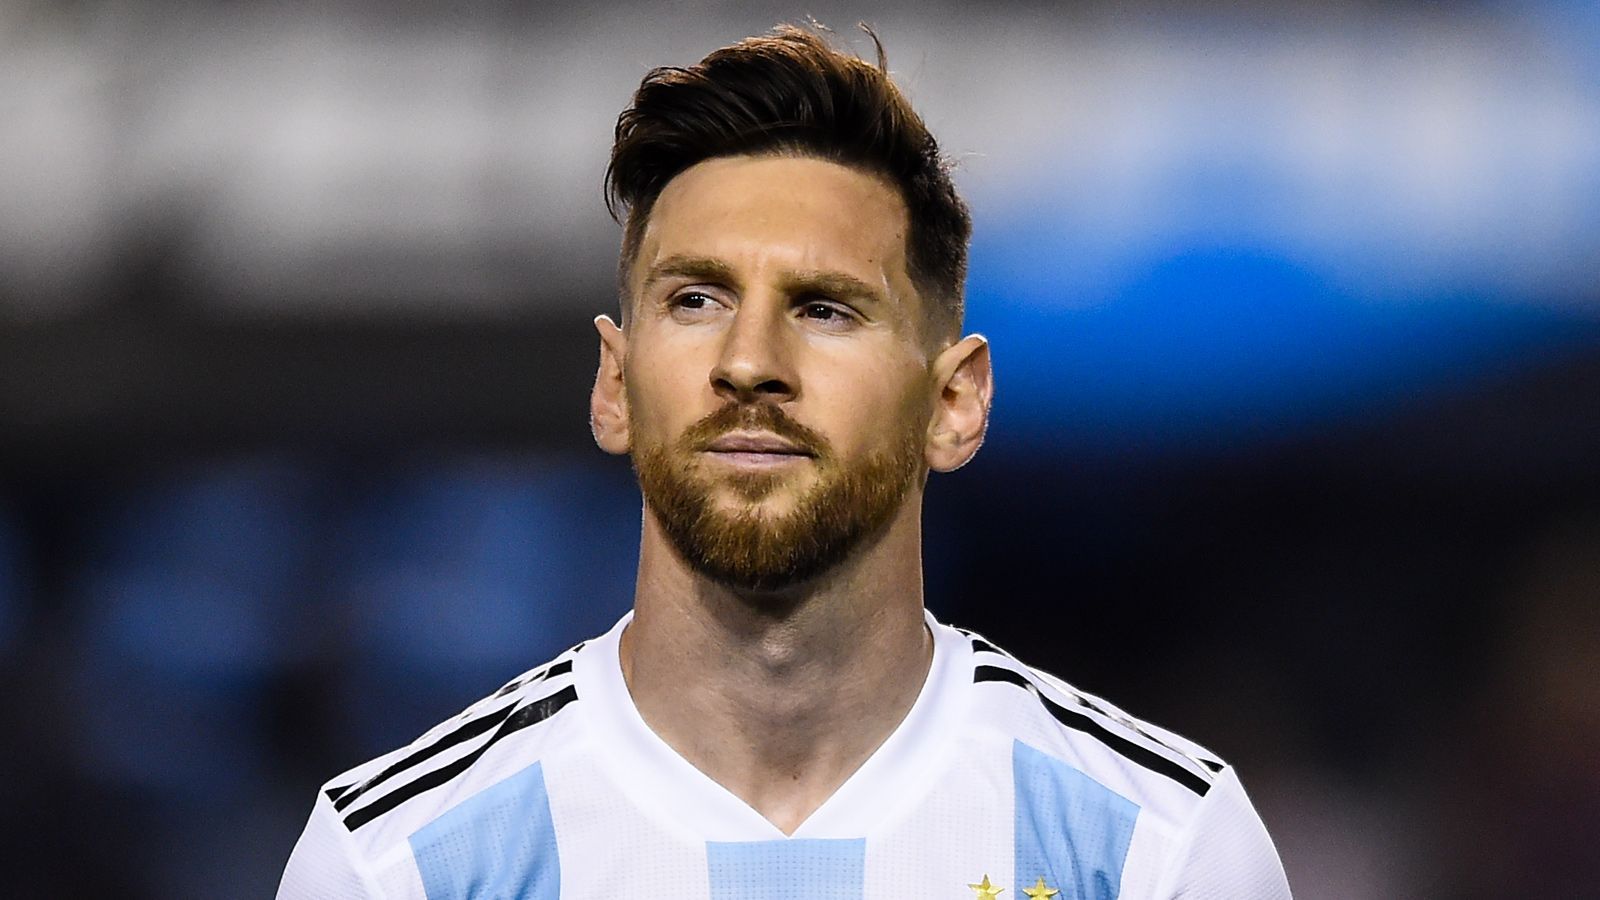 
                <strong>ran-Redakteur Christoph Dommisch tippt</strong><br>
                Weltmeister wird: Argentinien. Weil Lionel Messi ein richtig dufter Typ ist, den ich sehr mag. Er muss seine internationale Karriere einfach mit einem Titel krönen, sonst bleibt er unvollendet. Trotzdem werde ich mir kein Spiel dieser Fußball-WM ansehen ;-)!
              